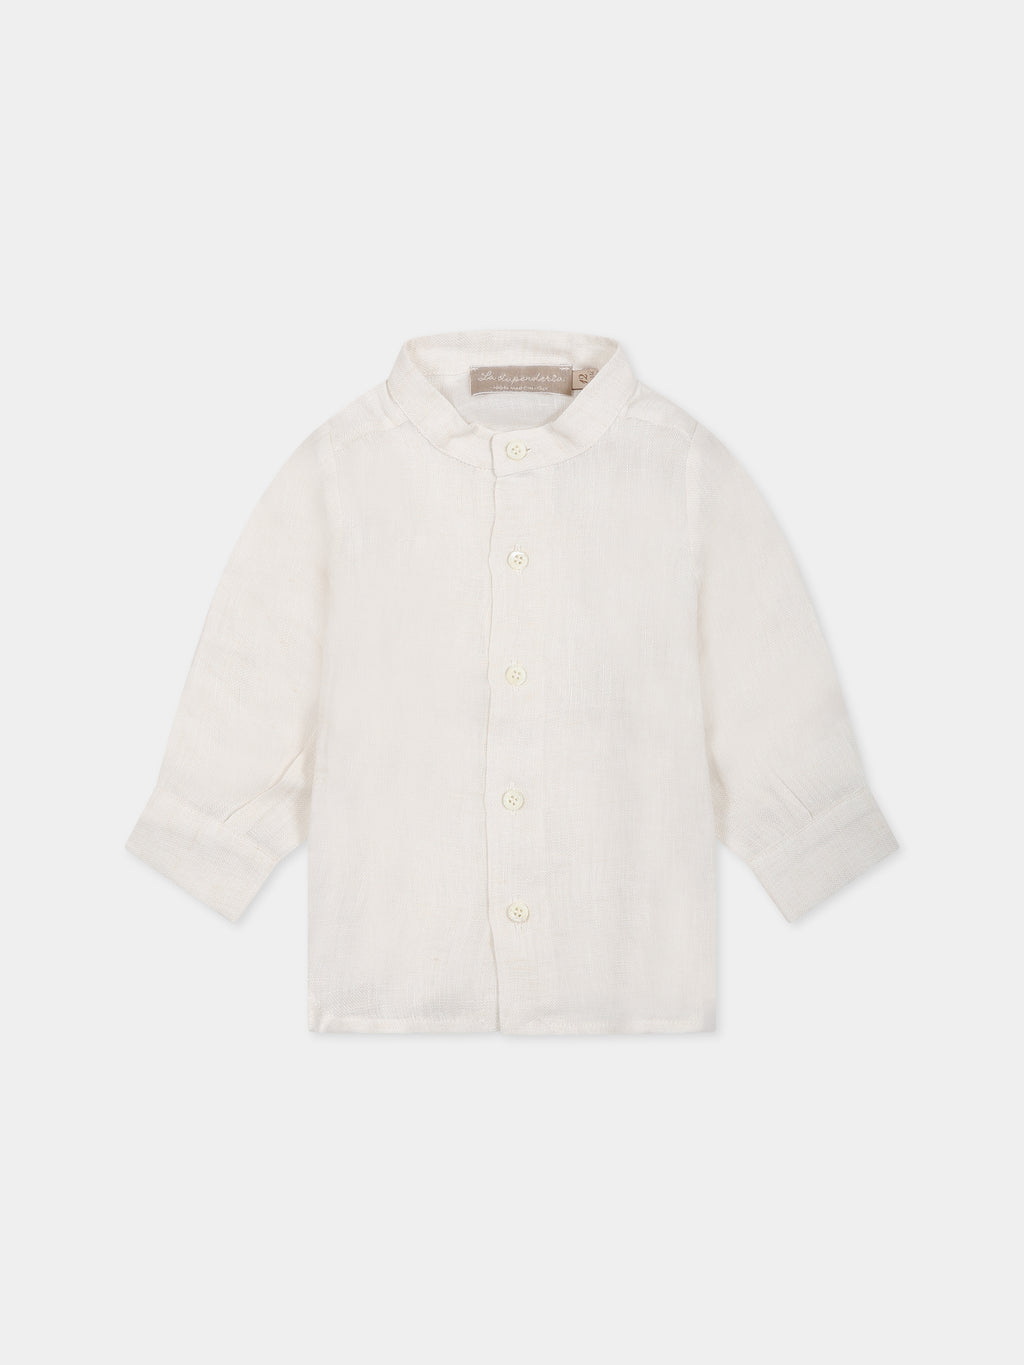 Camicia bianca per neonato